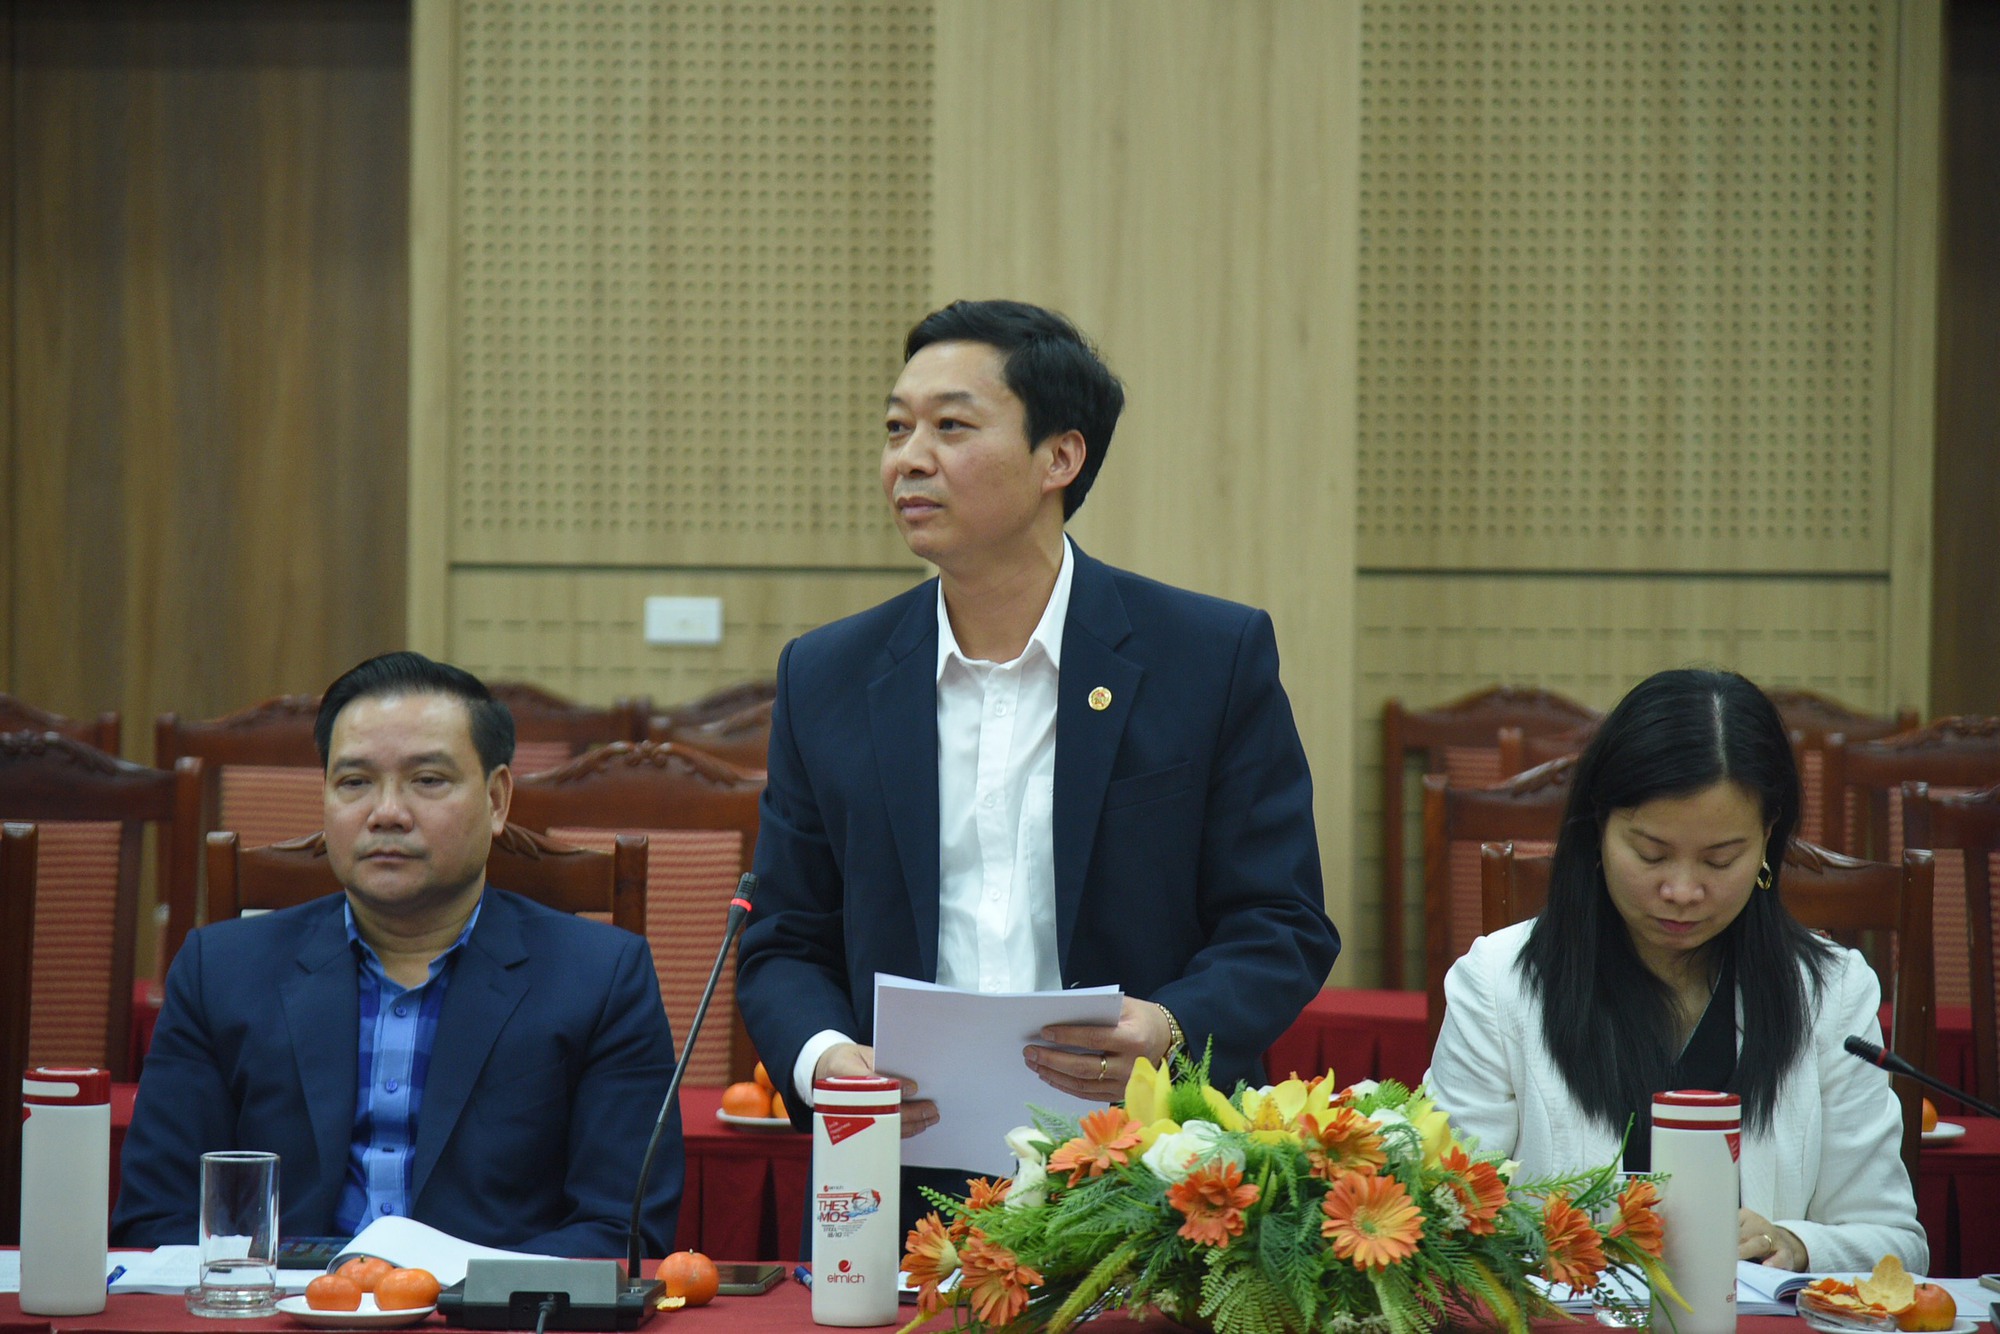 Phát huy vai trò trung tâm và nòng cốt của Hội Nông dân Việt Nam trong xây dựng cộng đồng nông thôn - Ảnh 6.